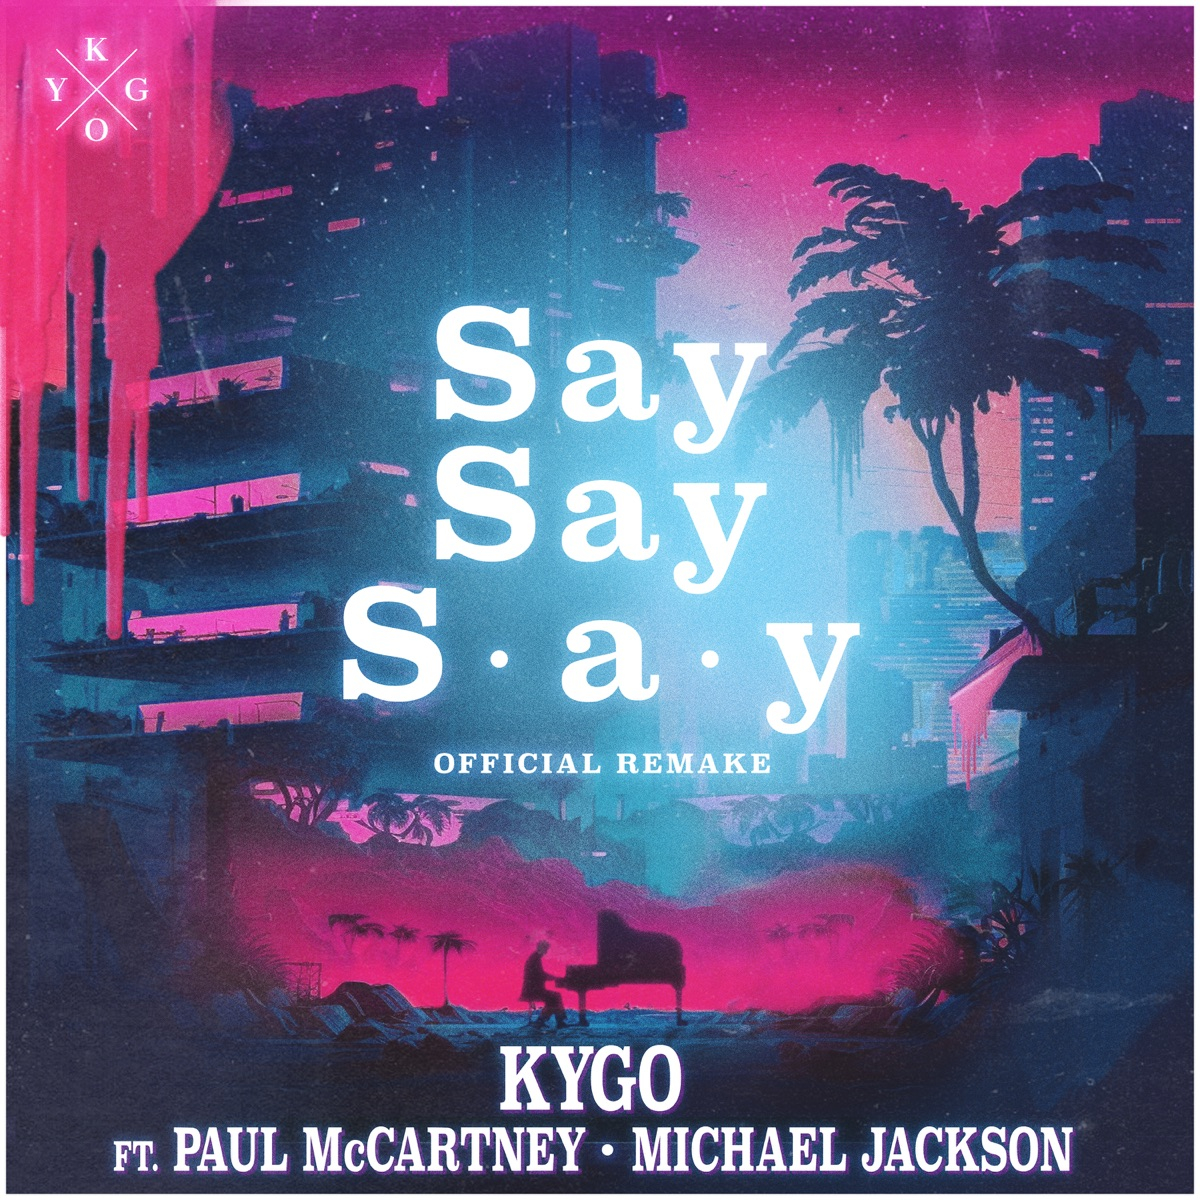 KYGO - Say Say Say